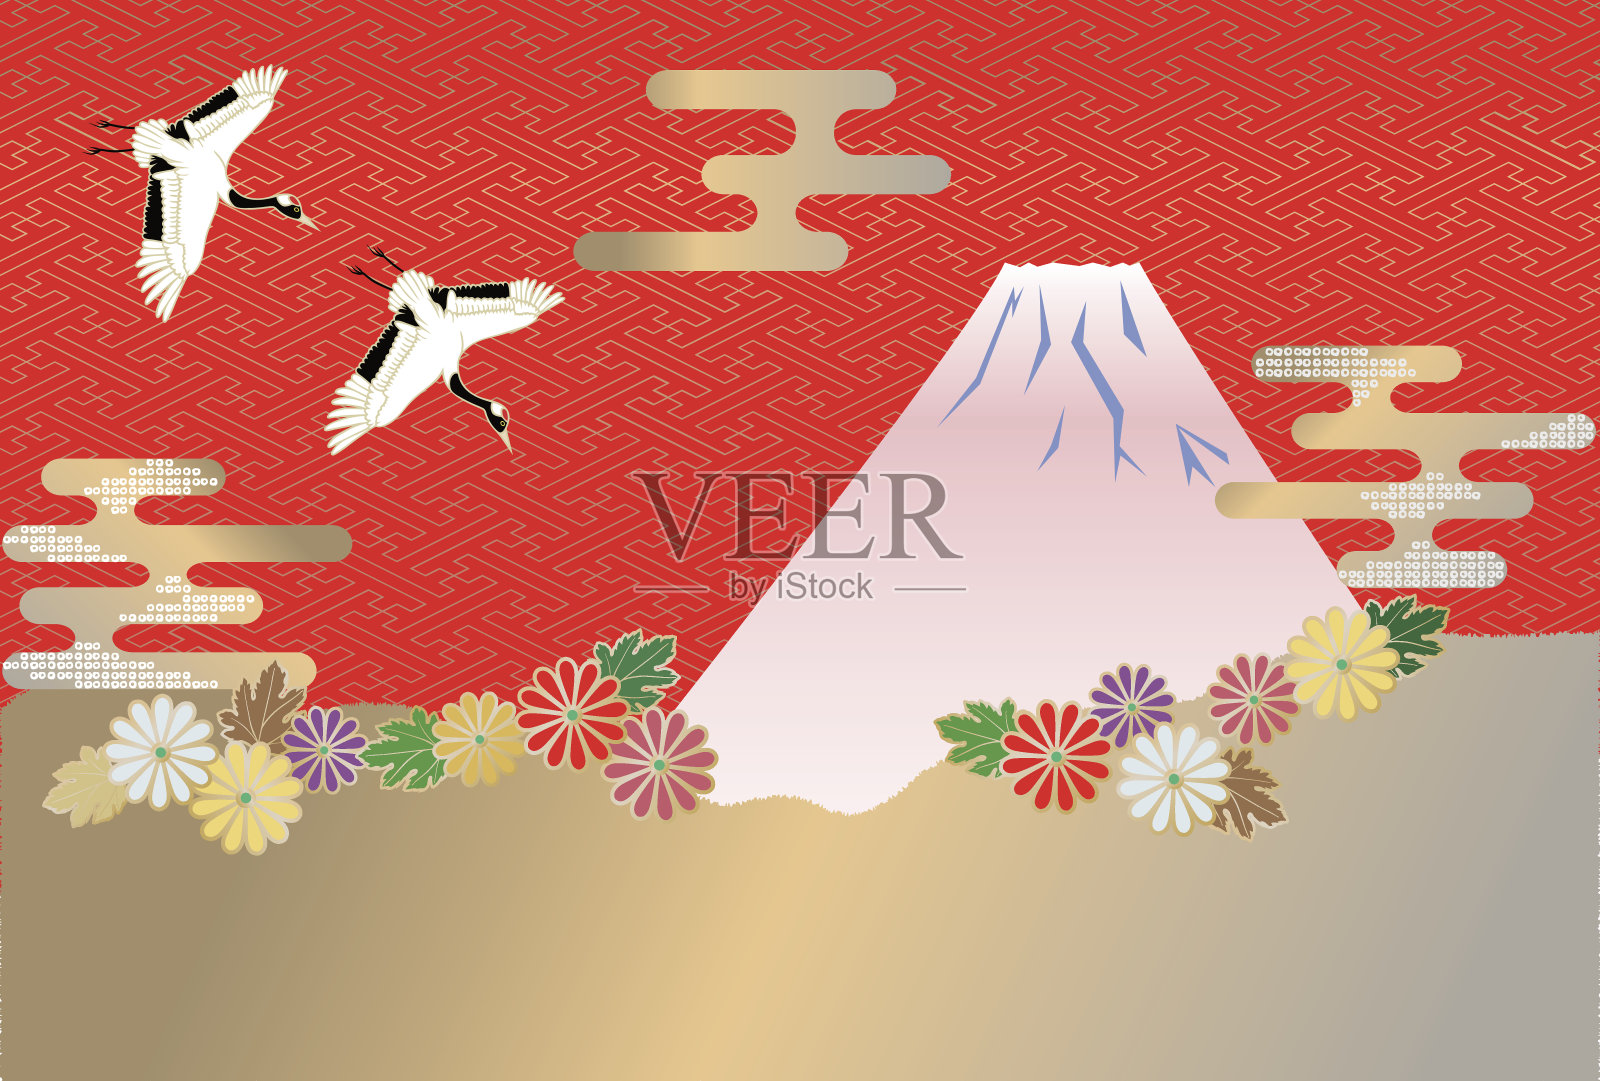 日本风格的富士山形象和菊花和日本图案。插画图片素材